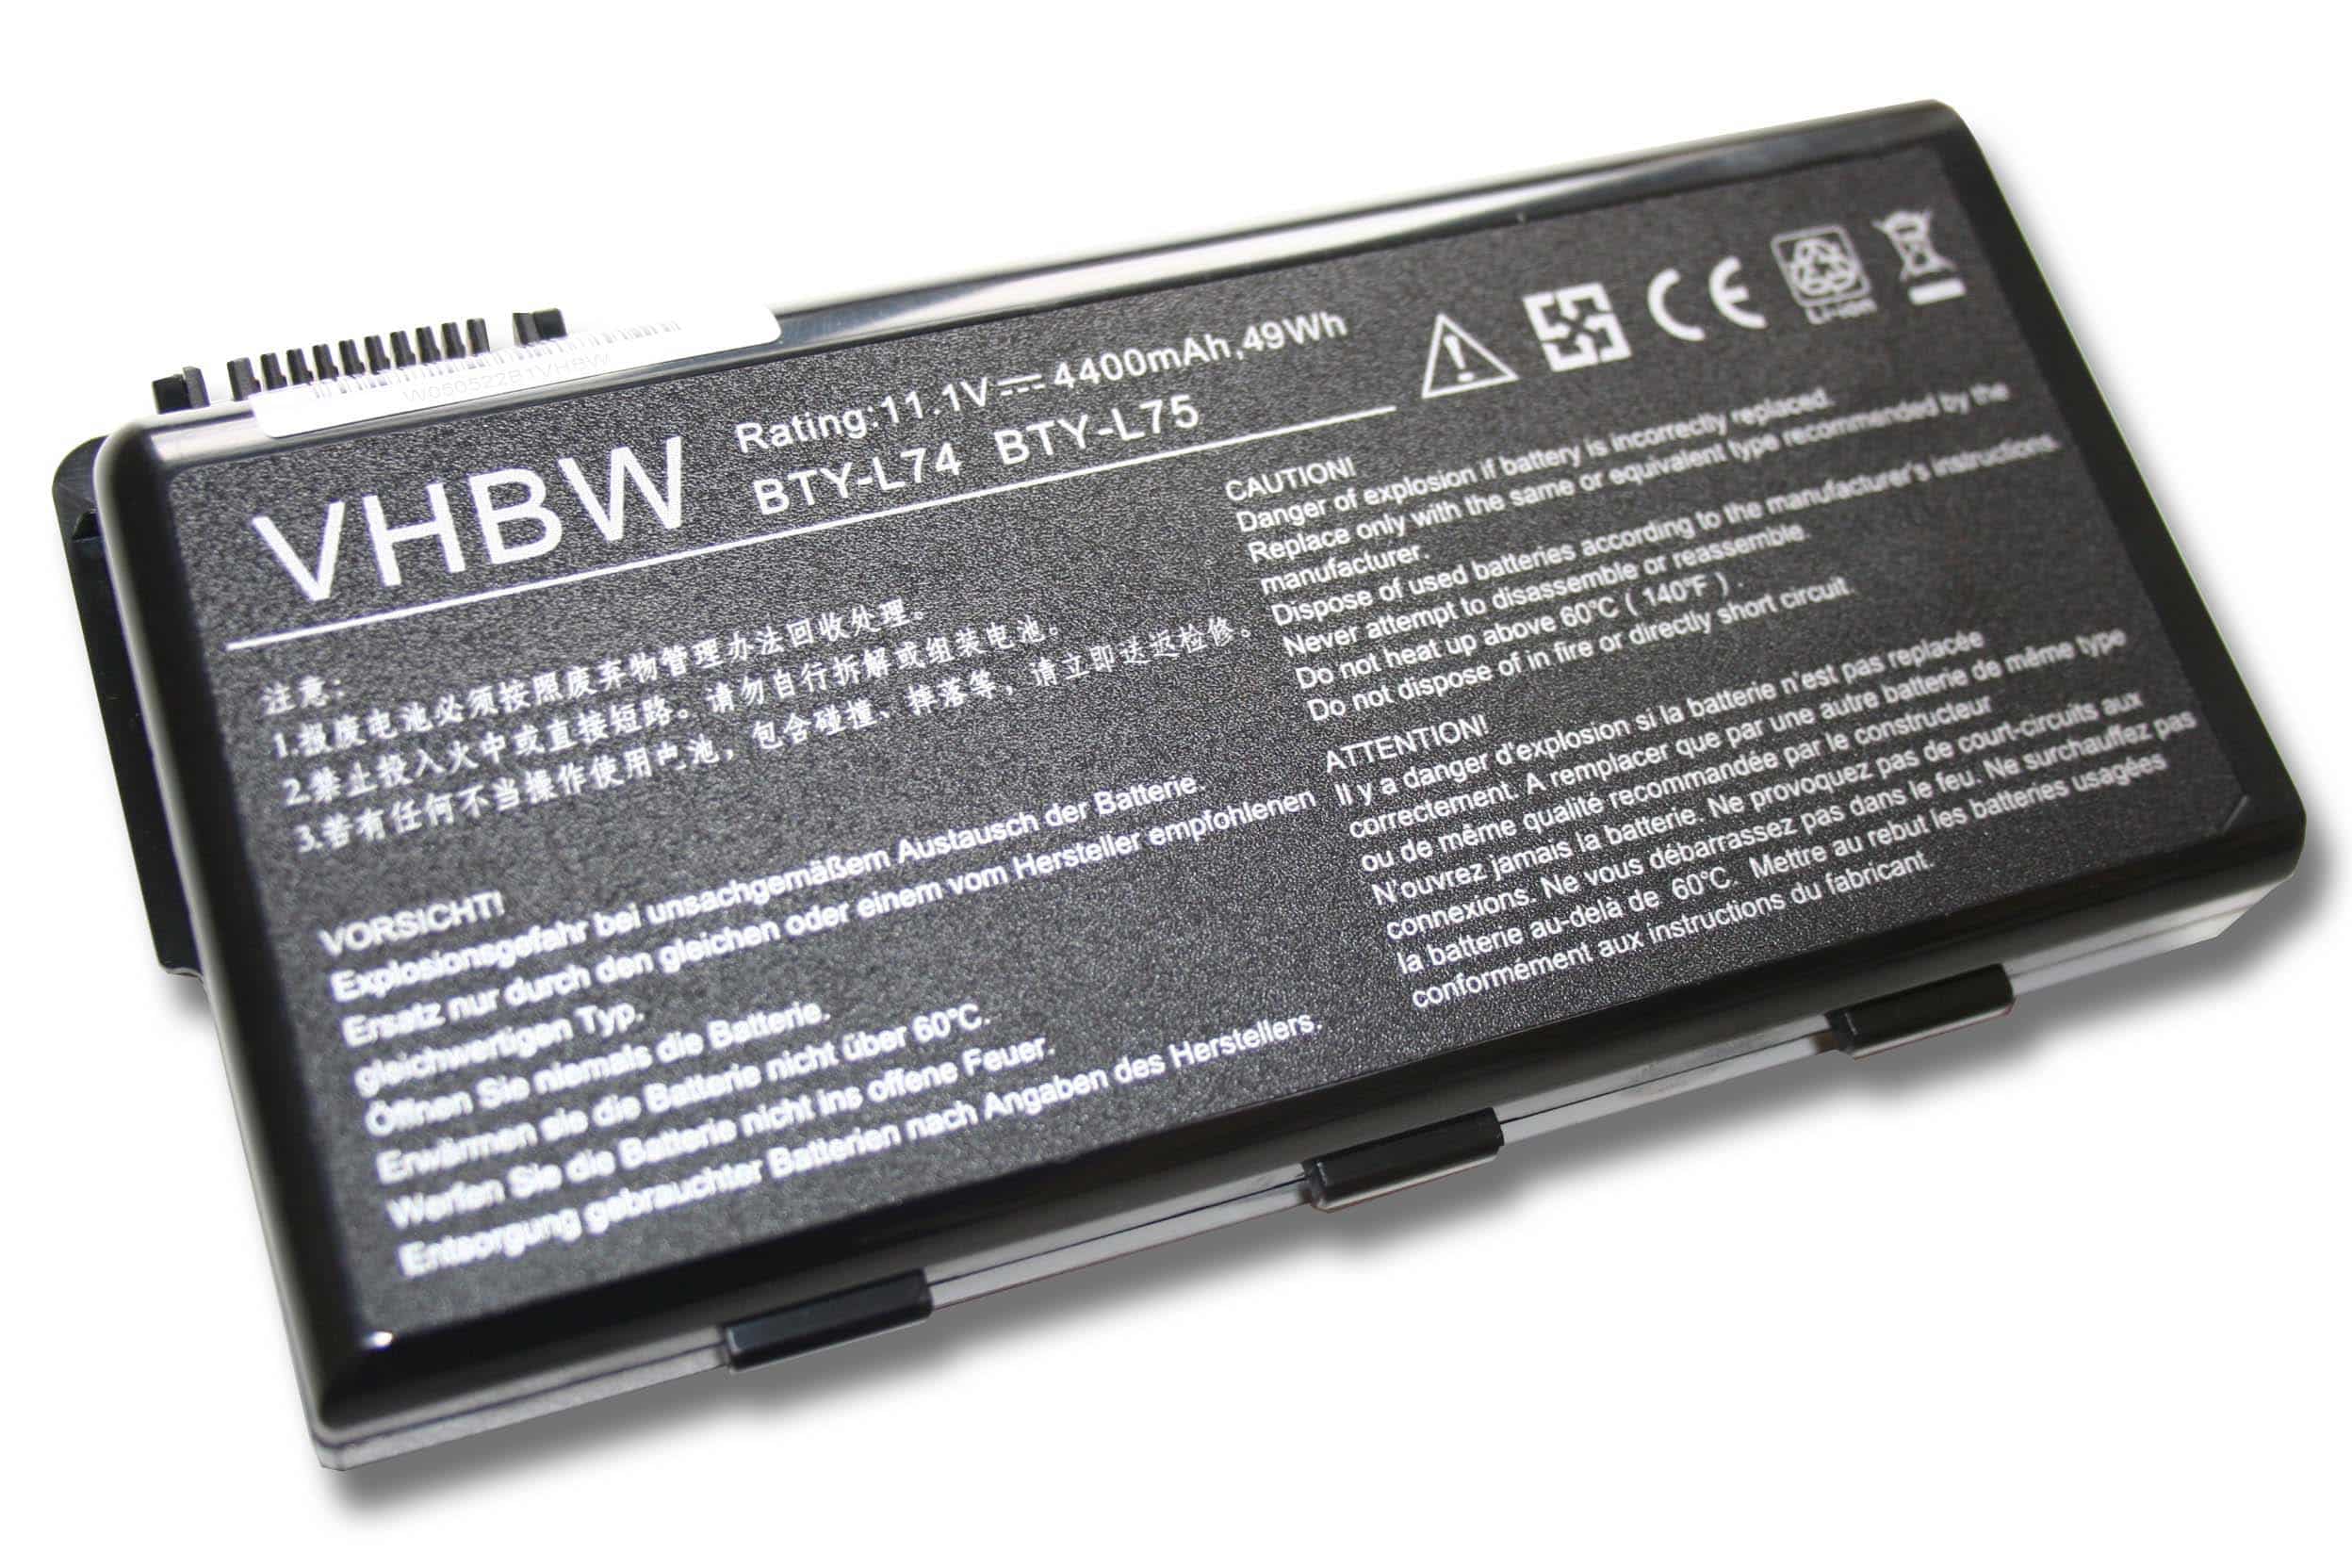 Batterie remplace MSI 91NMS17LD4SU1, 91NMS17LF6SU1 pour ordinateur portable - 4400mAh 11,1V Li-ion, noir